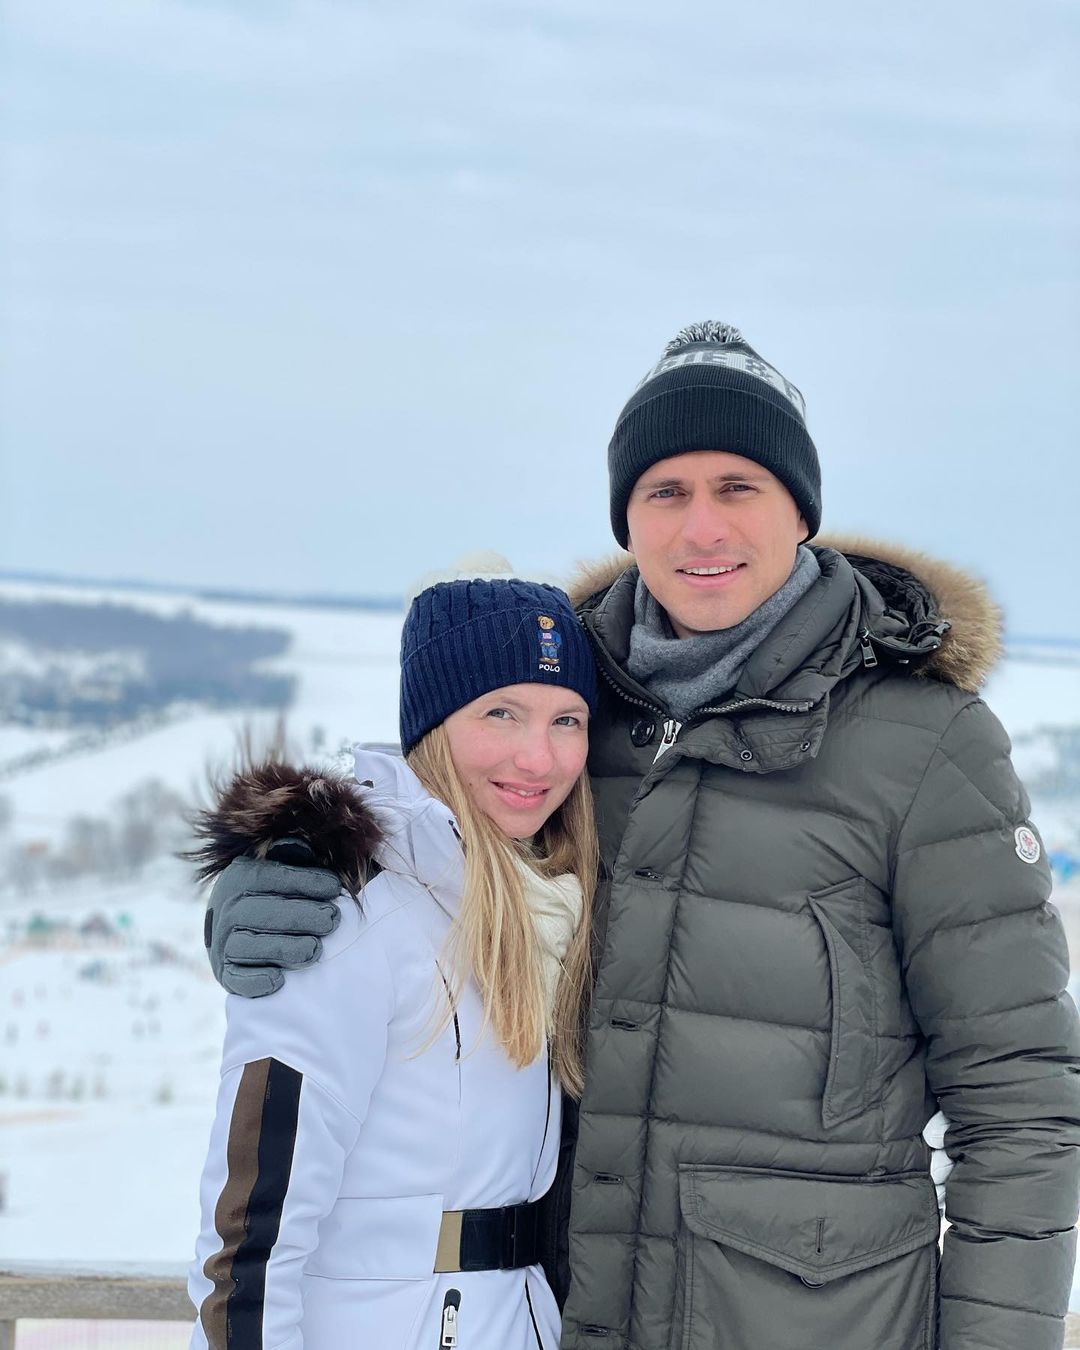 Семейный уик-энд: Елизавета Юрушева и Александр Скичко отдохнули на украинском горнолыжном курорте